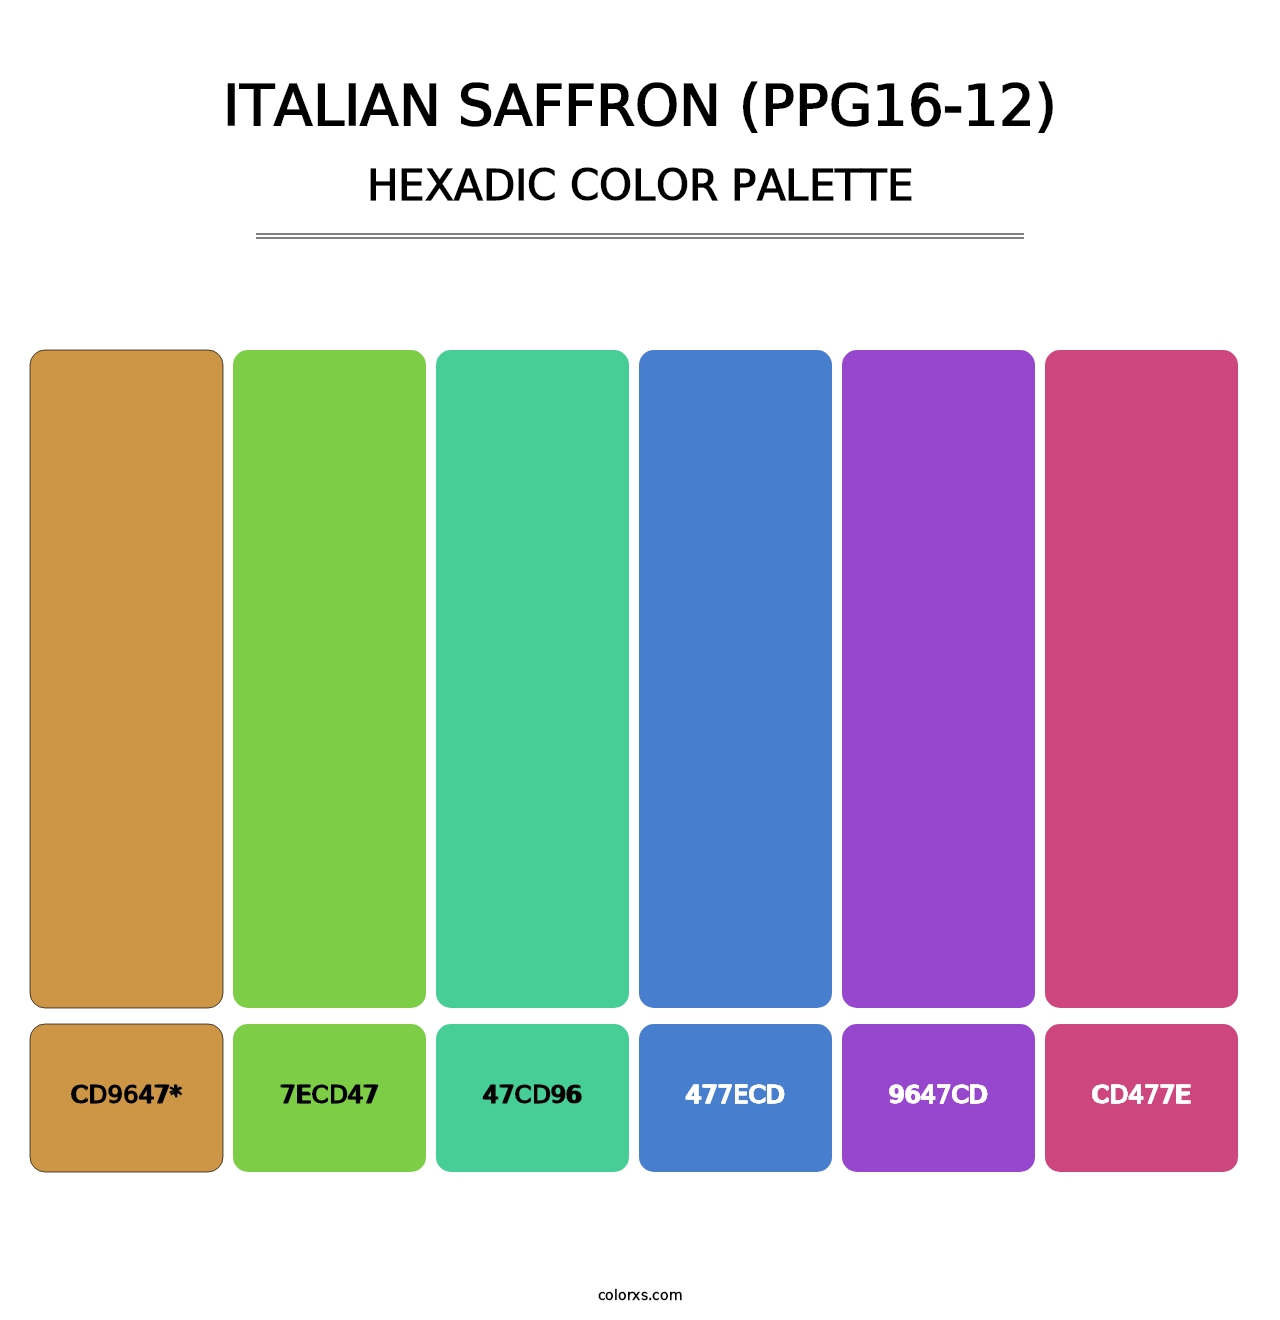 Italian Saffron (PPG16-12) - Hexadic Color Palette